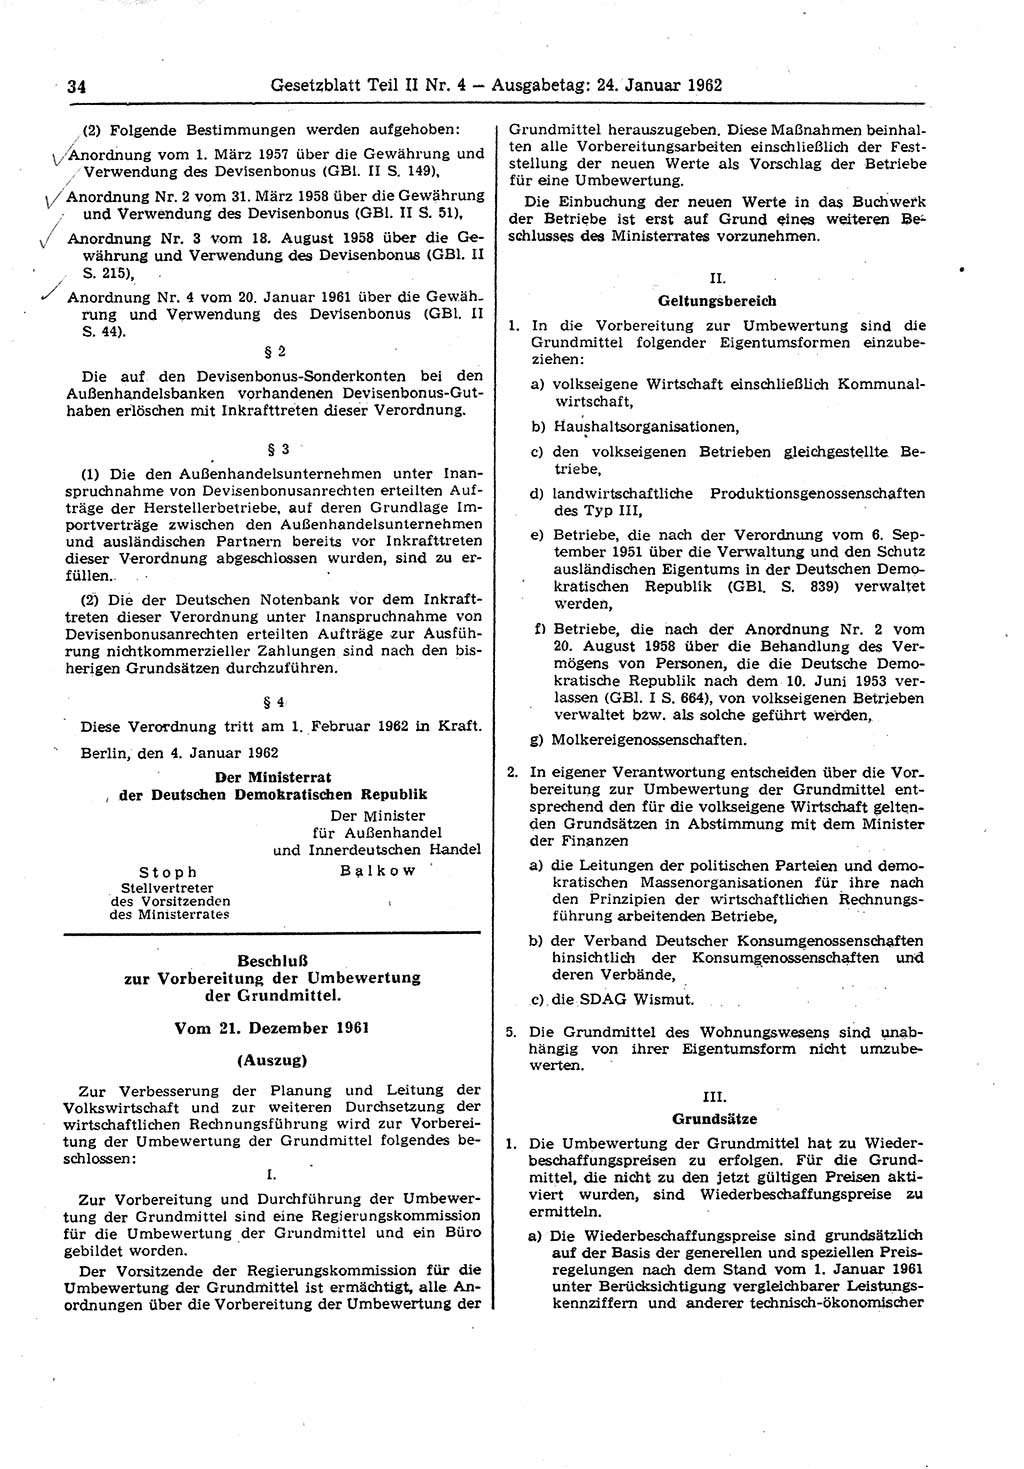 Gesetzblatt (GBl.) der Deutschen Demokratischen Republik (DDR) Teil ⅠⅠ 1962, Seite 34 (GBl. DDR ⅠⅠ 1962, S. 34)